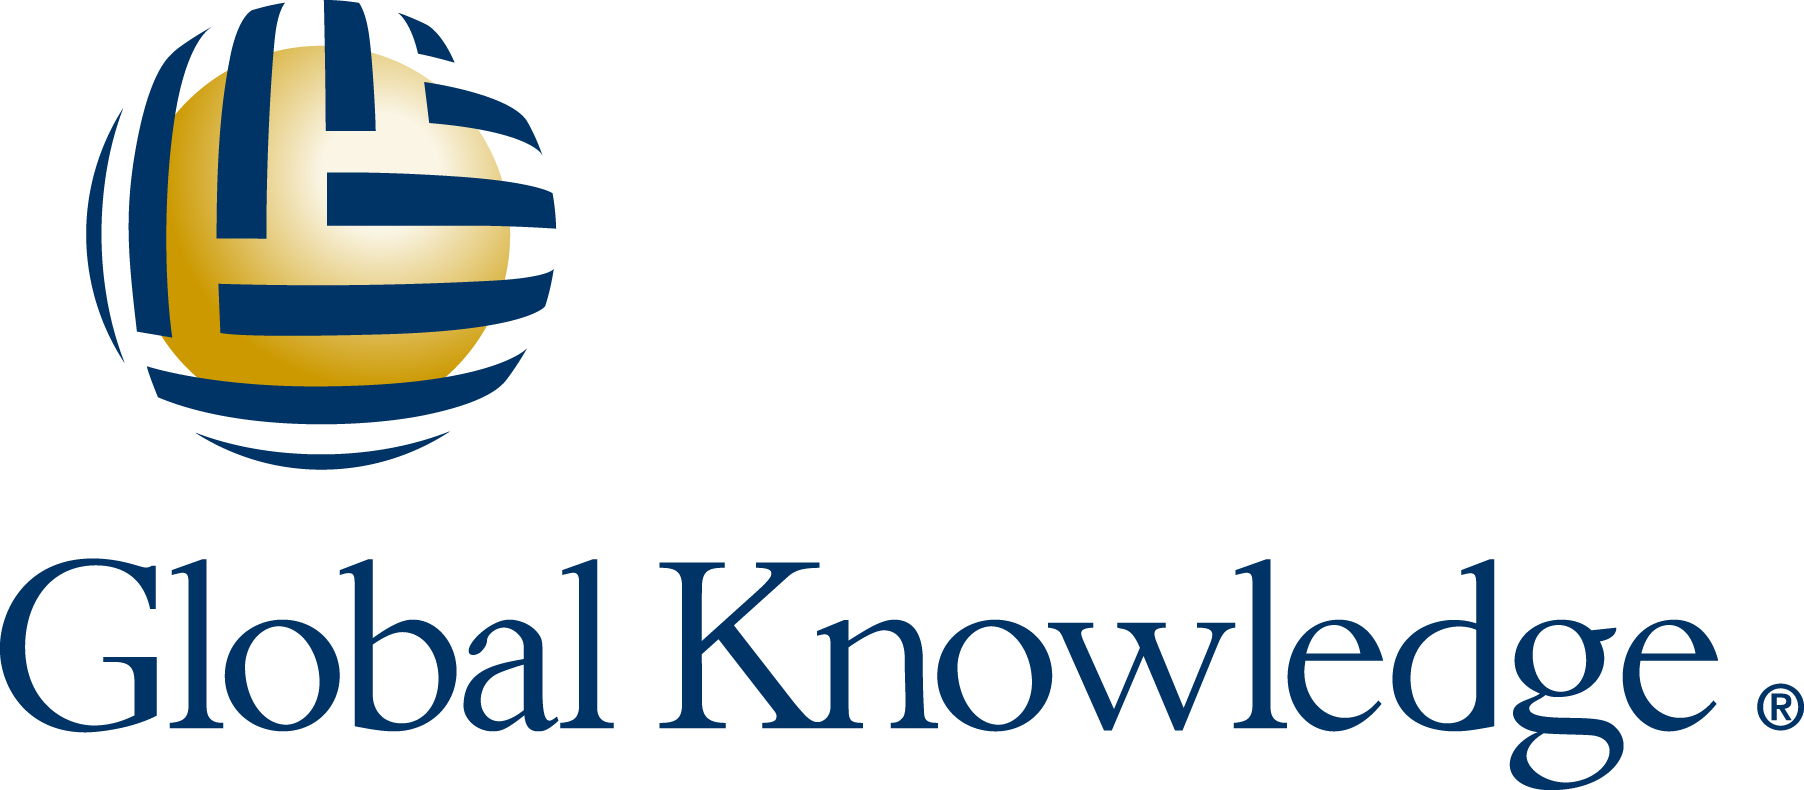 Microsoft Azure Fundamentals - Global Knowledge Certificate